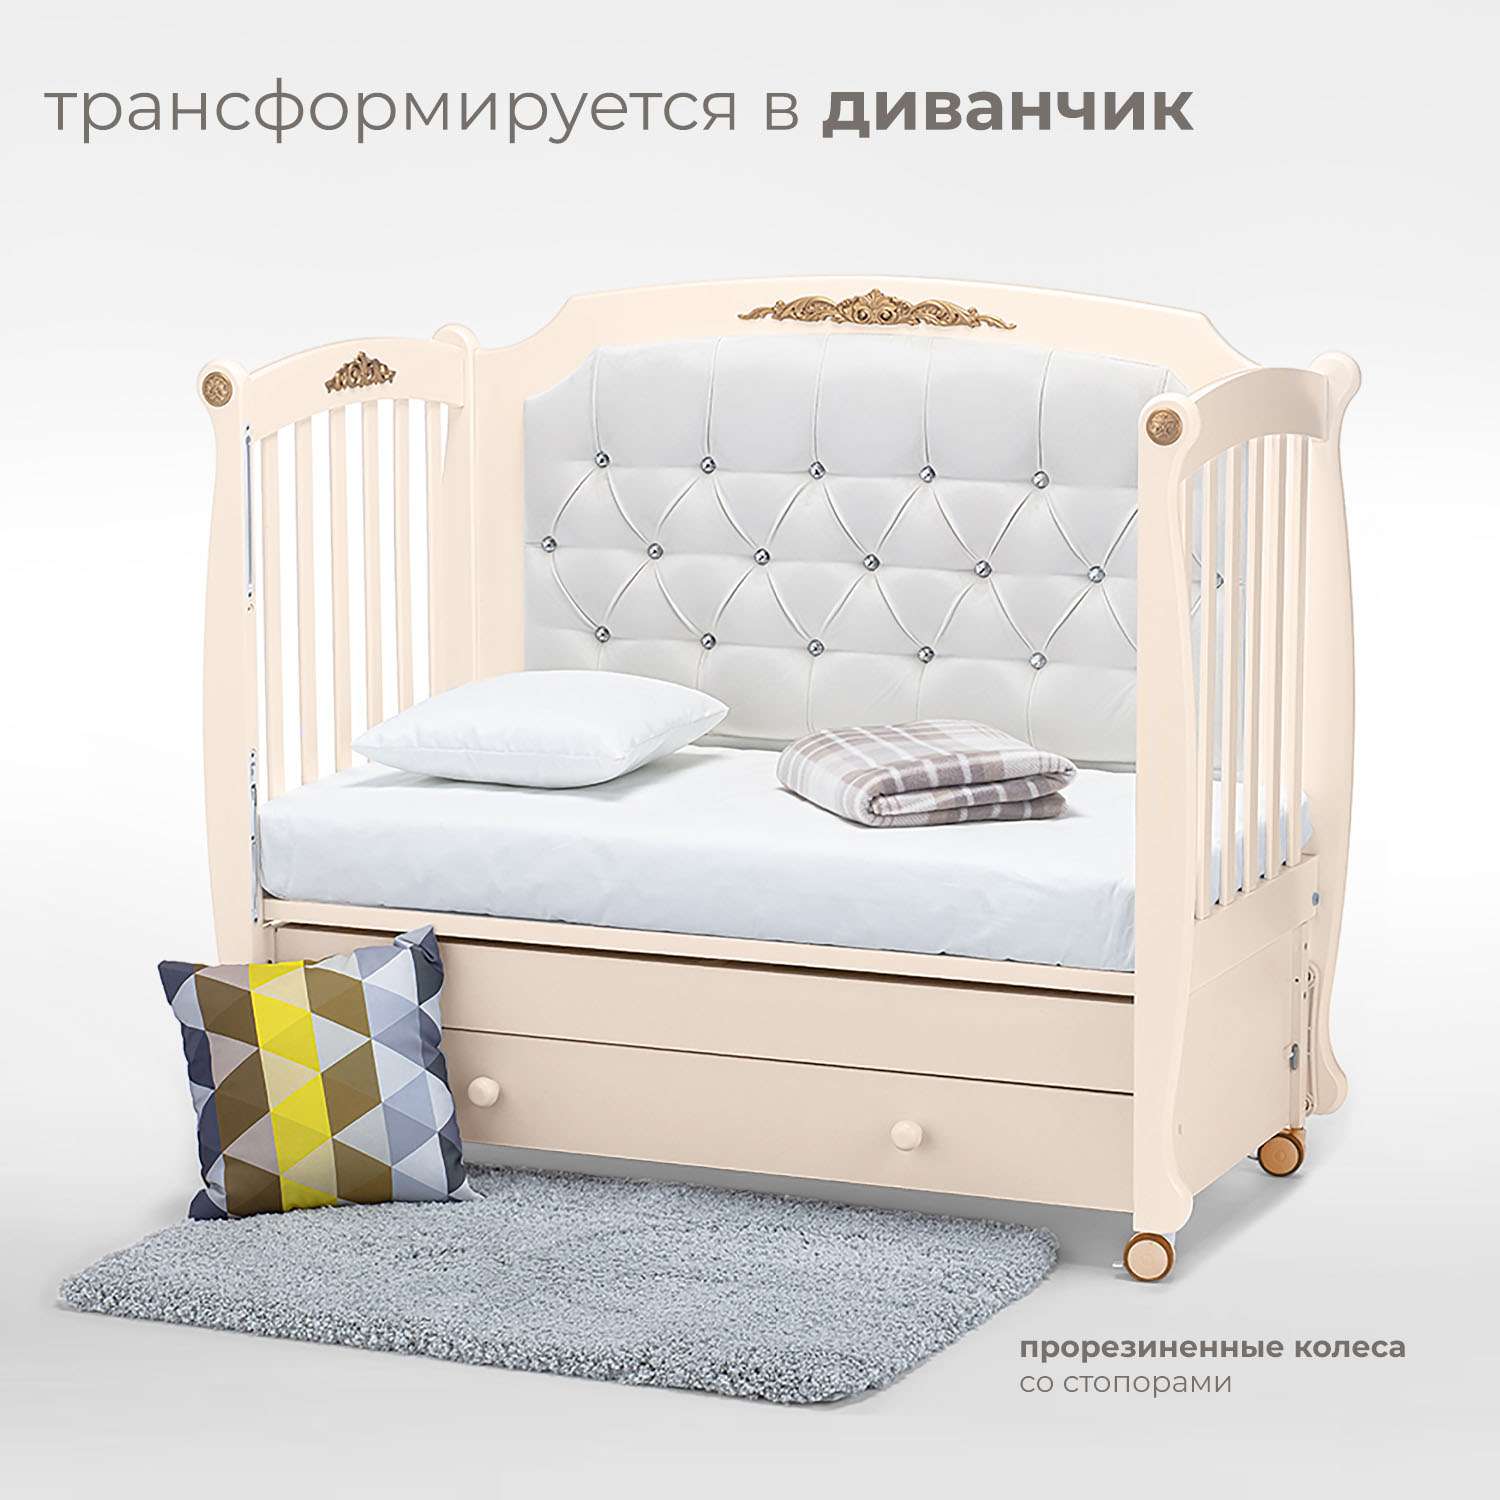 Детская кроватка Nuovita Furore Swing прямоугольная, продольный маятник (слоновая кость) - фото 5